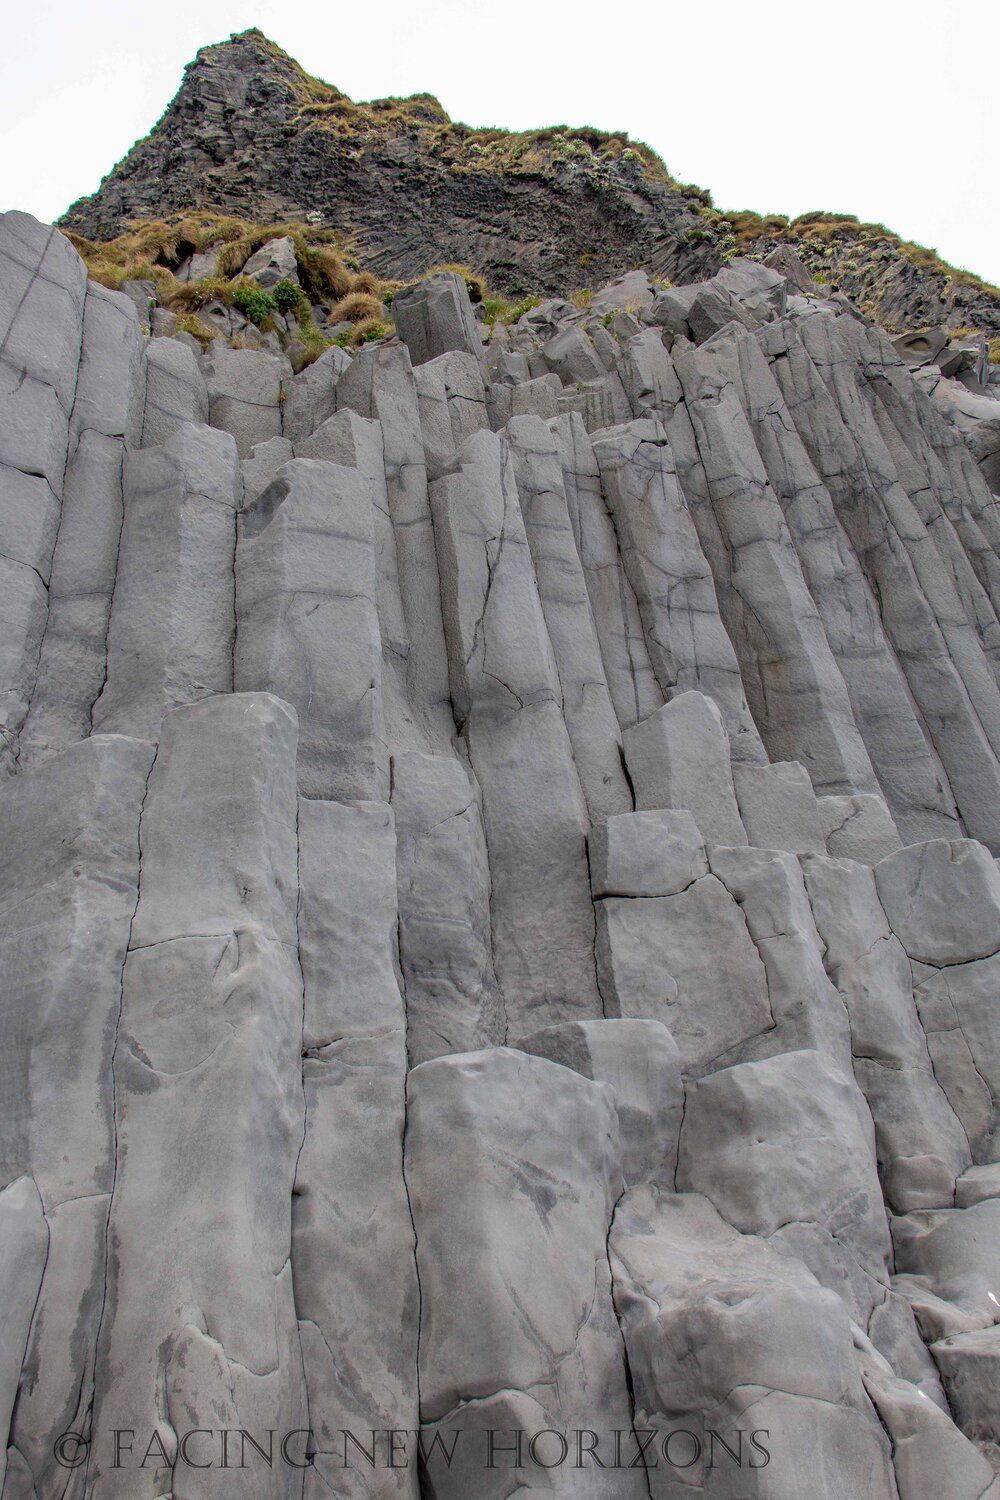  Towering basalt columns at Reynisfjara  